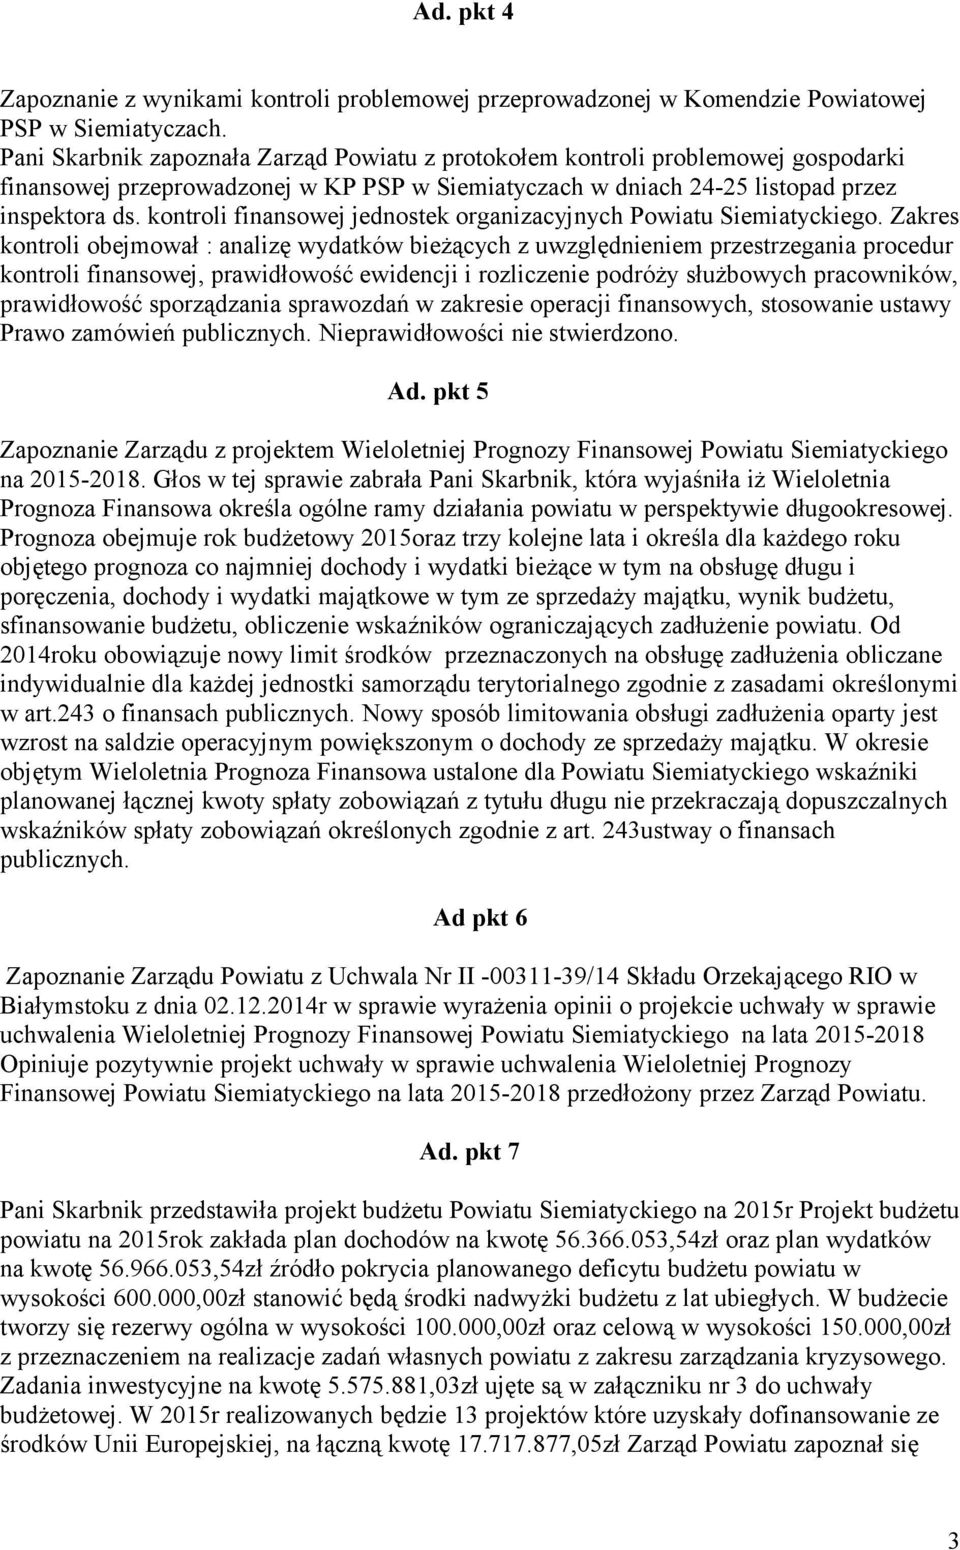 kontroli finansowej jednostek organizacyjnych Powiatu Siemiatyckiego.